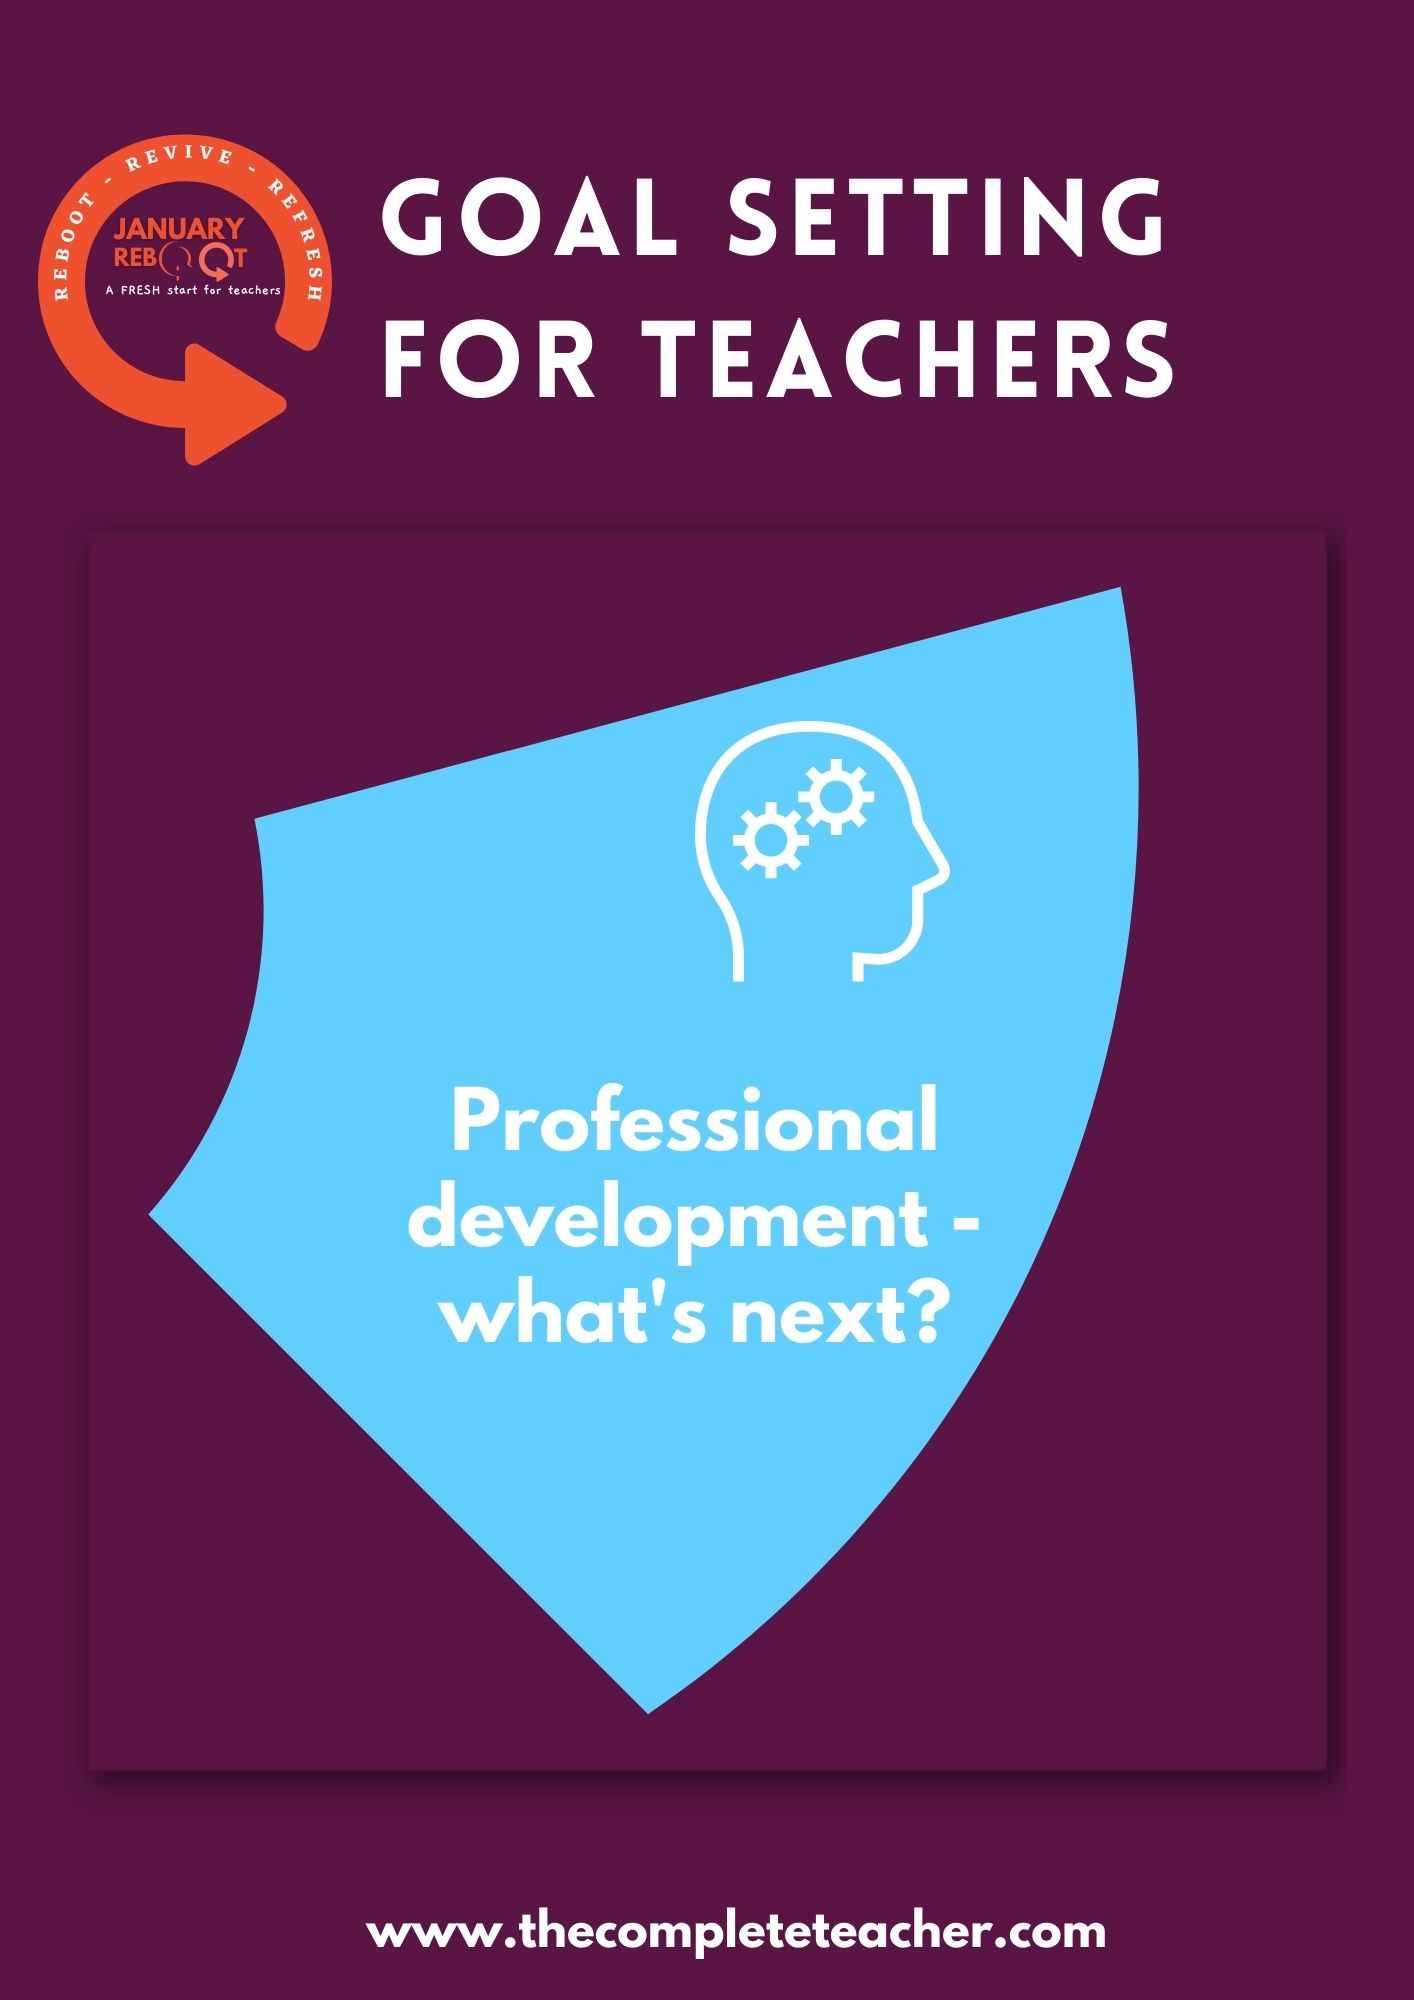 Goal setting for teachers.jpg